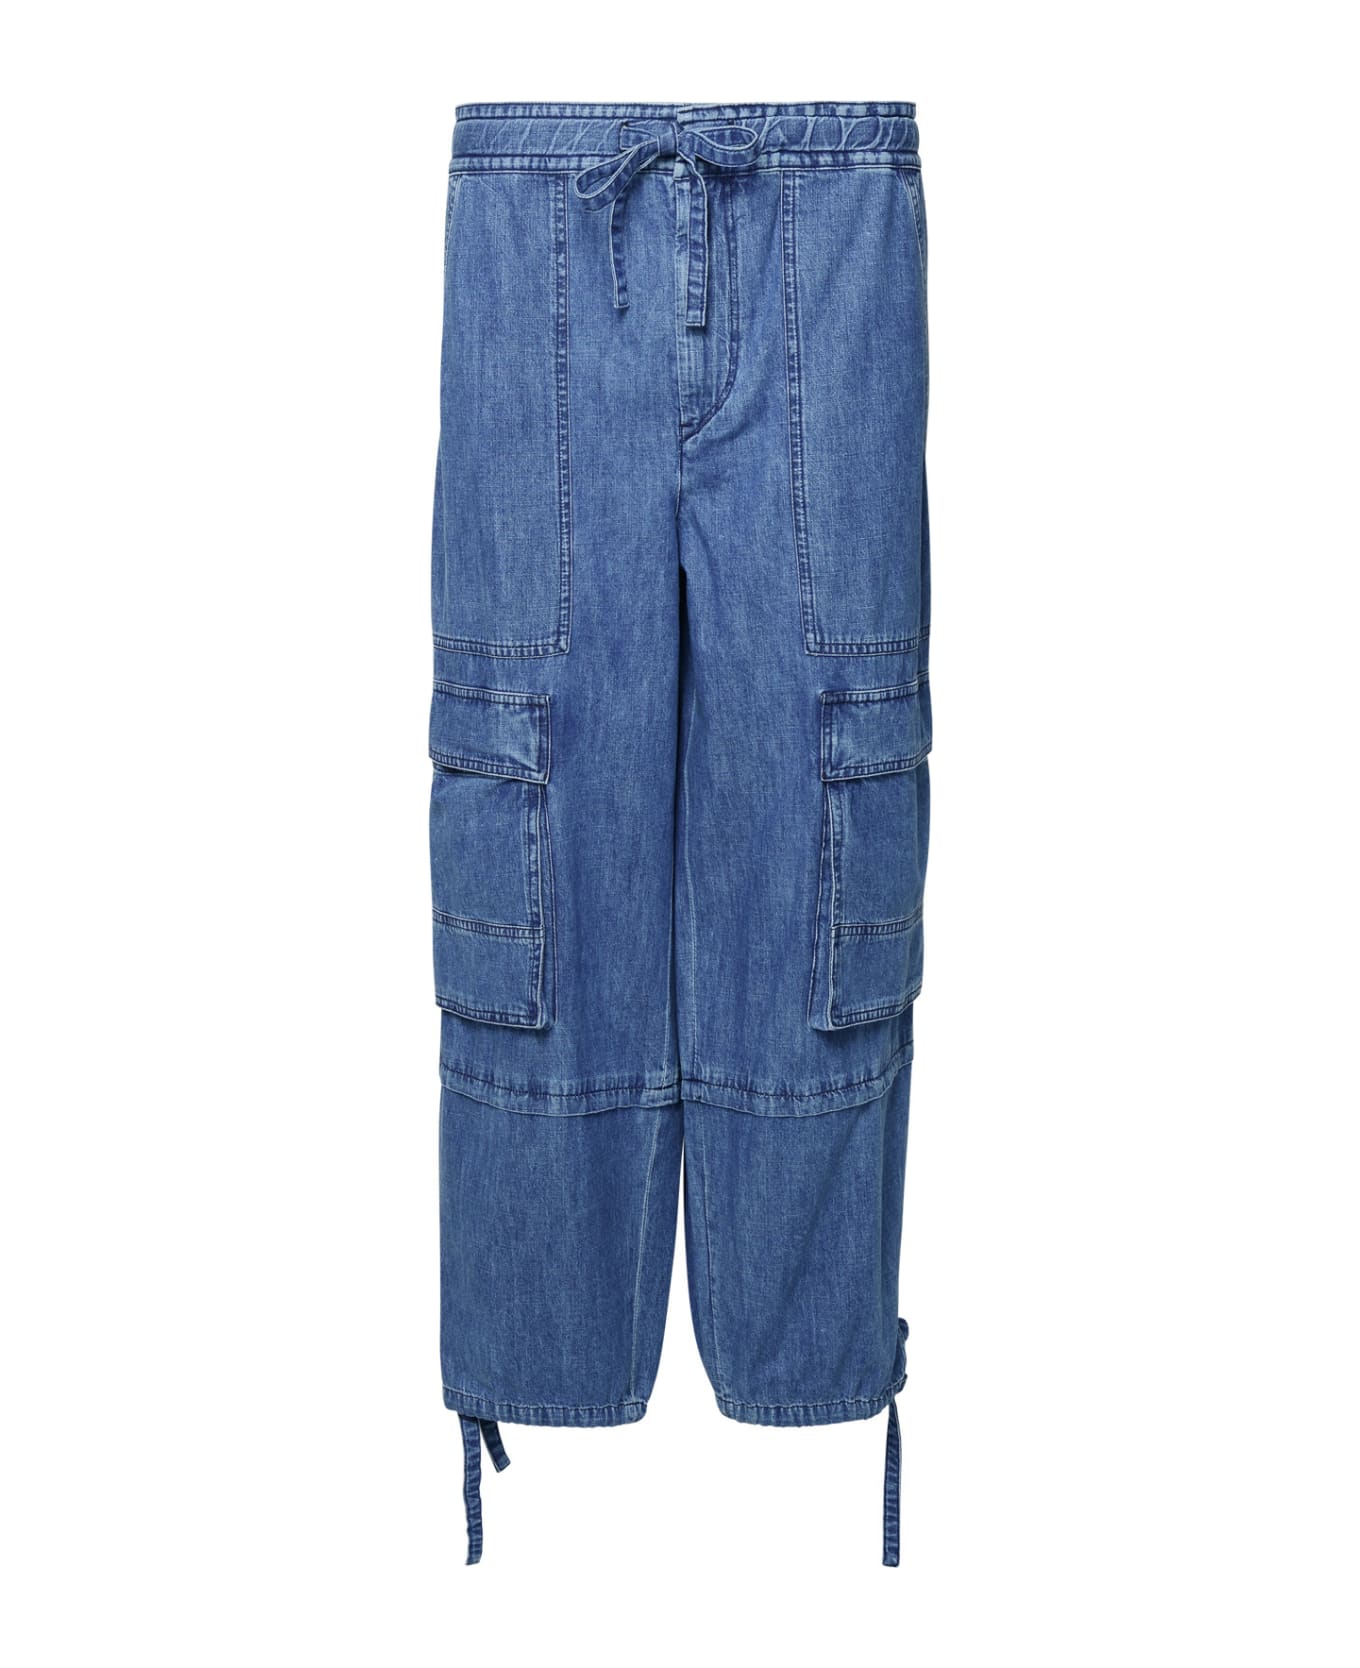 Marant Étoile Cotton Cargo Pants - BLUE デニム